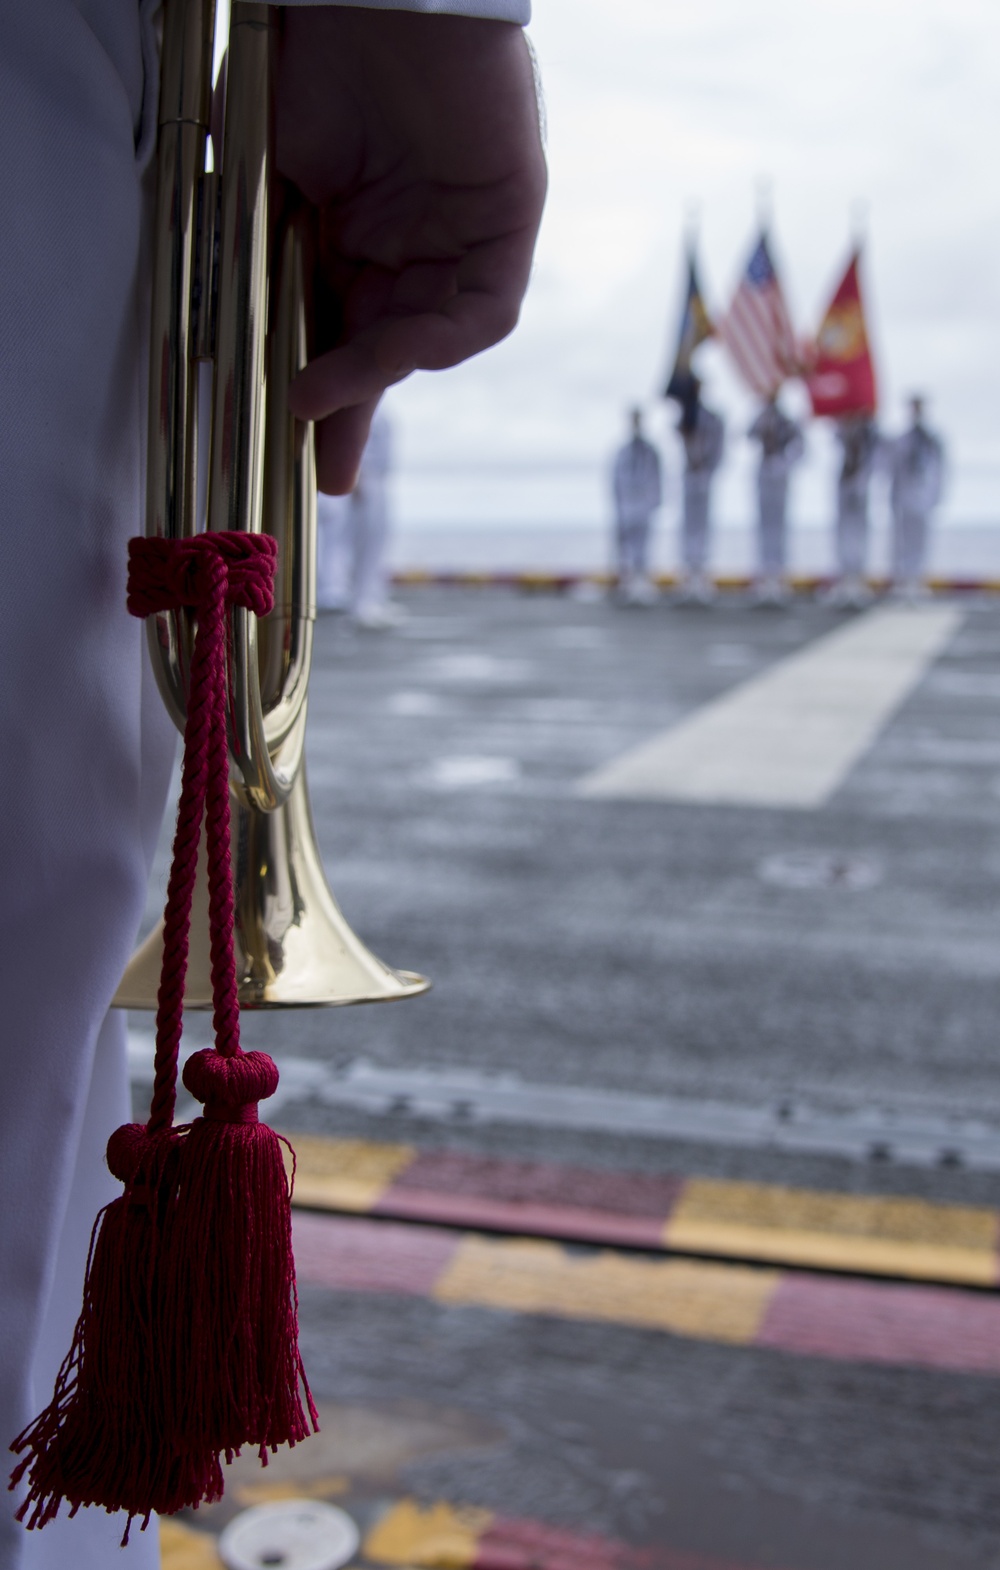 USS Wasp burial-at-sea